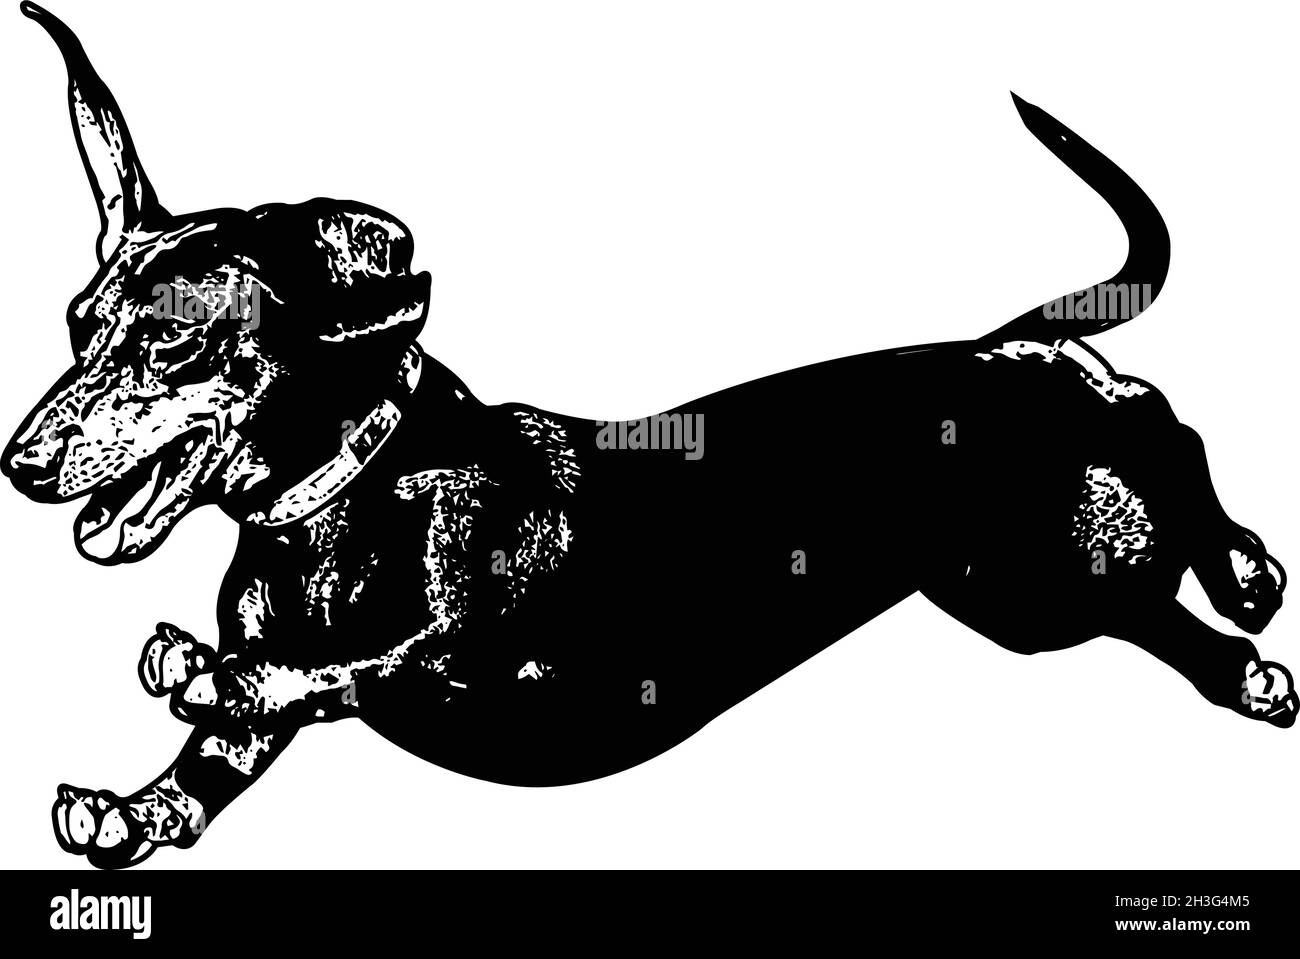 dachshund ejecutando ilustración de croquis - vector Ilustración del Vector